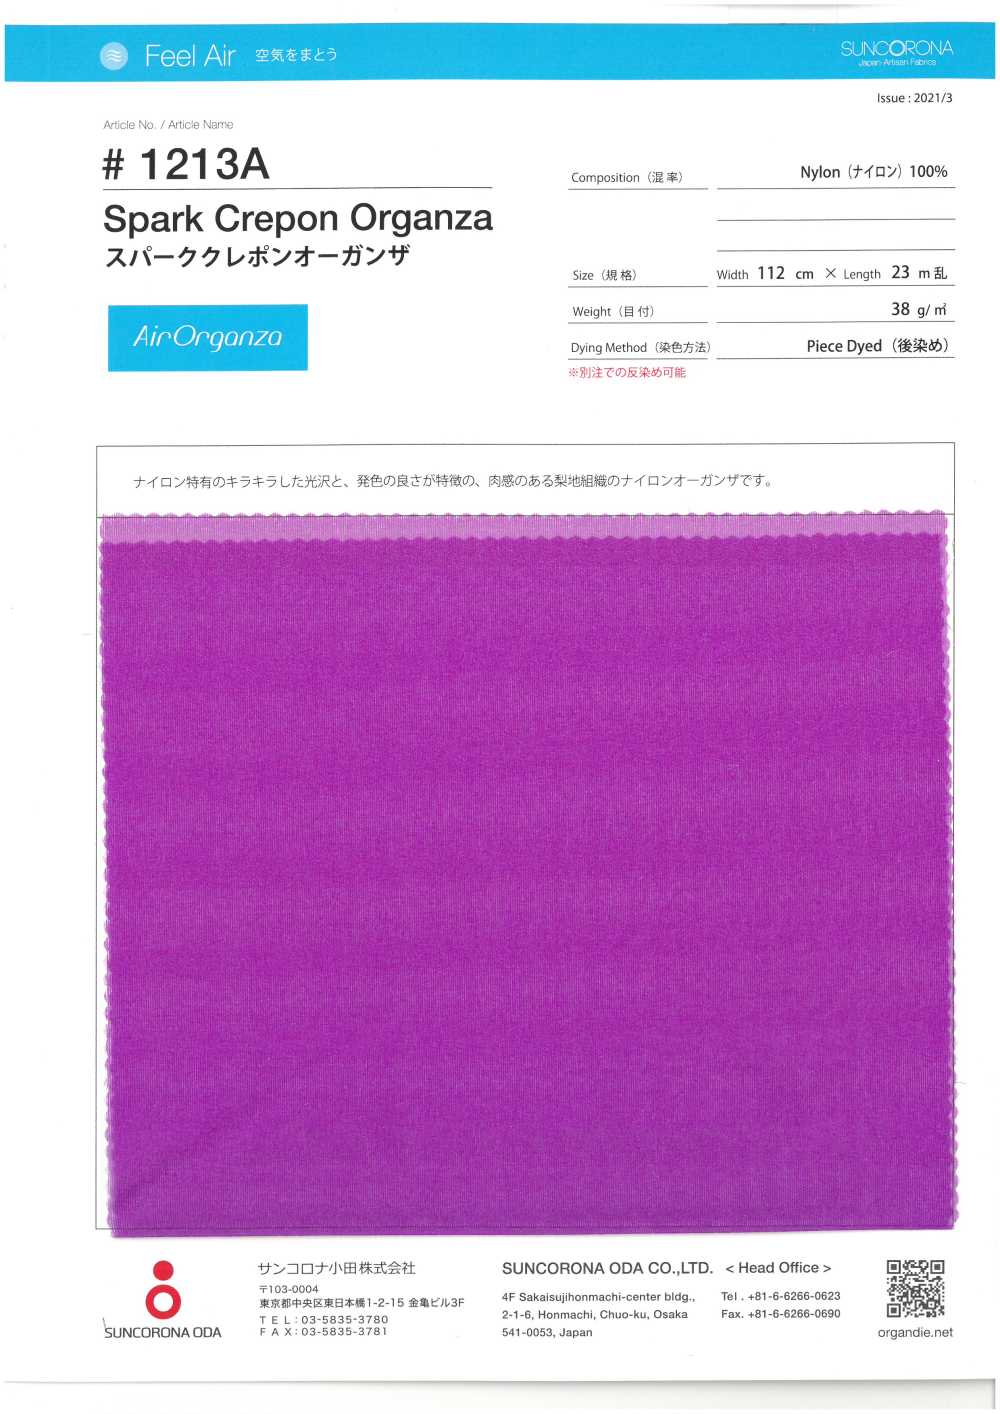 1213A Spark Klepon Organza[Textile / Fabric] Suncorona Oda